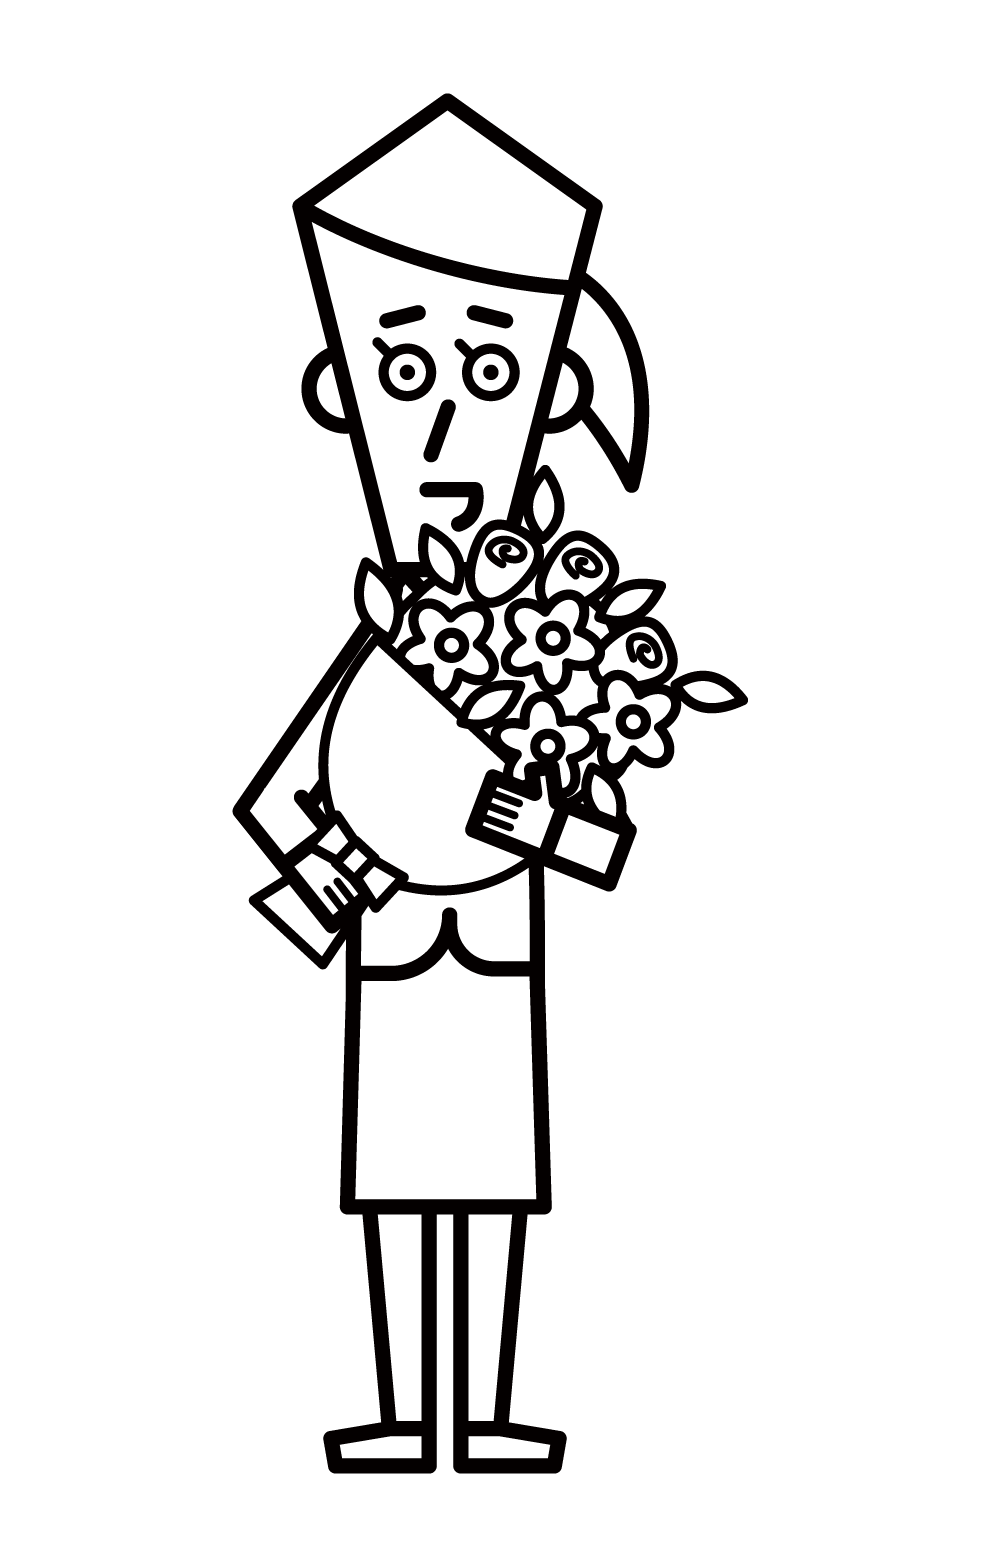 꽃다발을 주는 사람(여자)의 그림